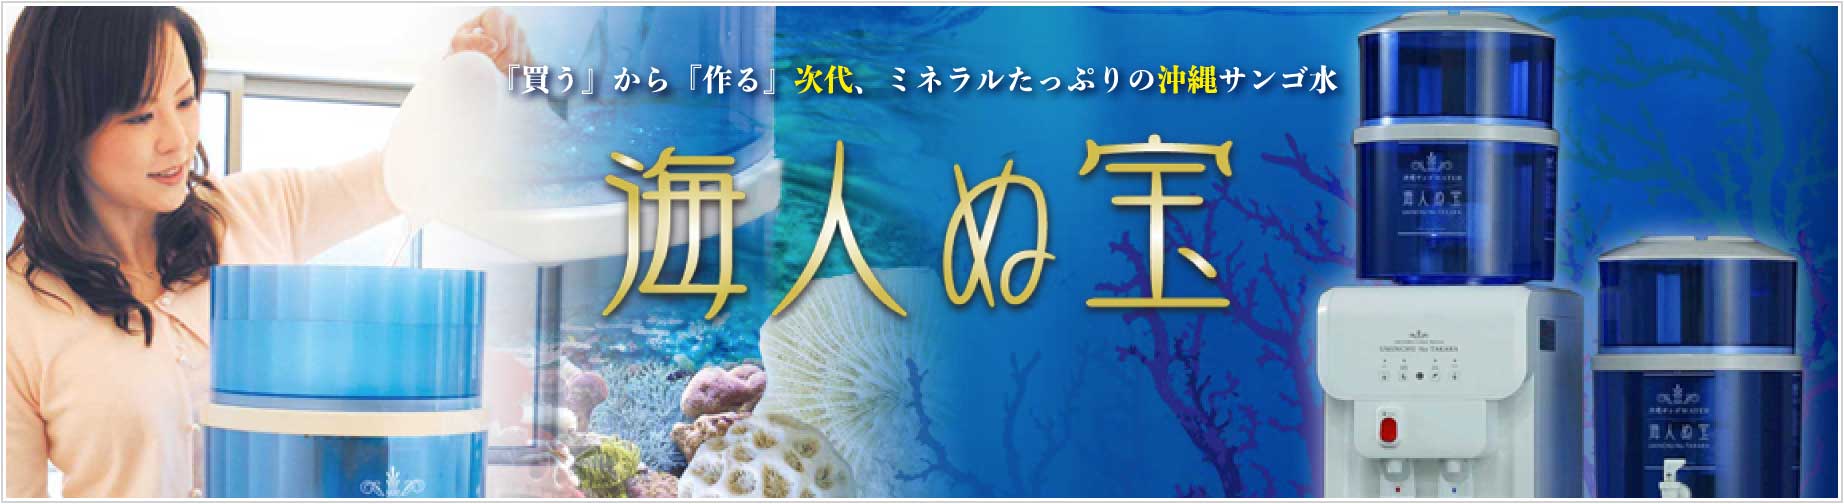 『買う』から『作る』次代、ミネラルたっぷりの沖縄サンゴ水 海人ぬ宝